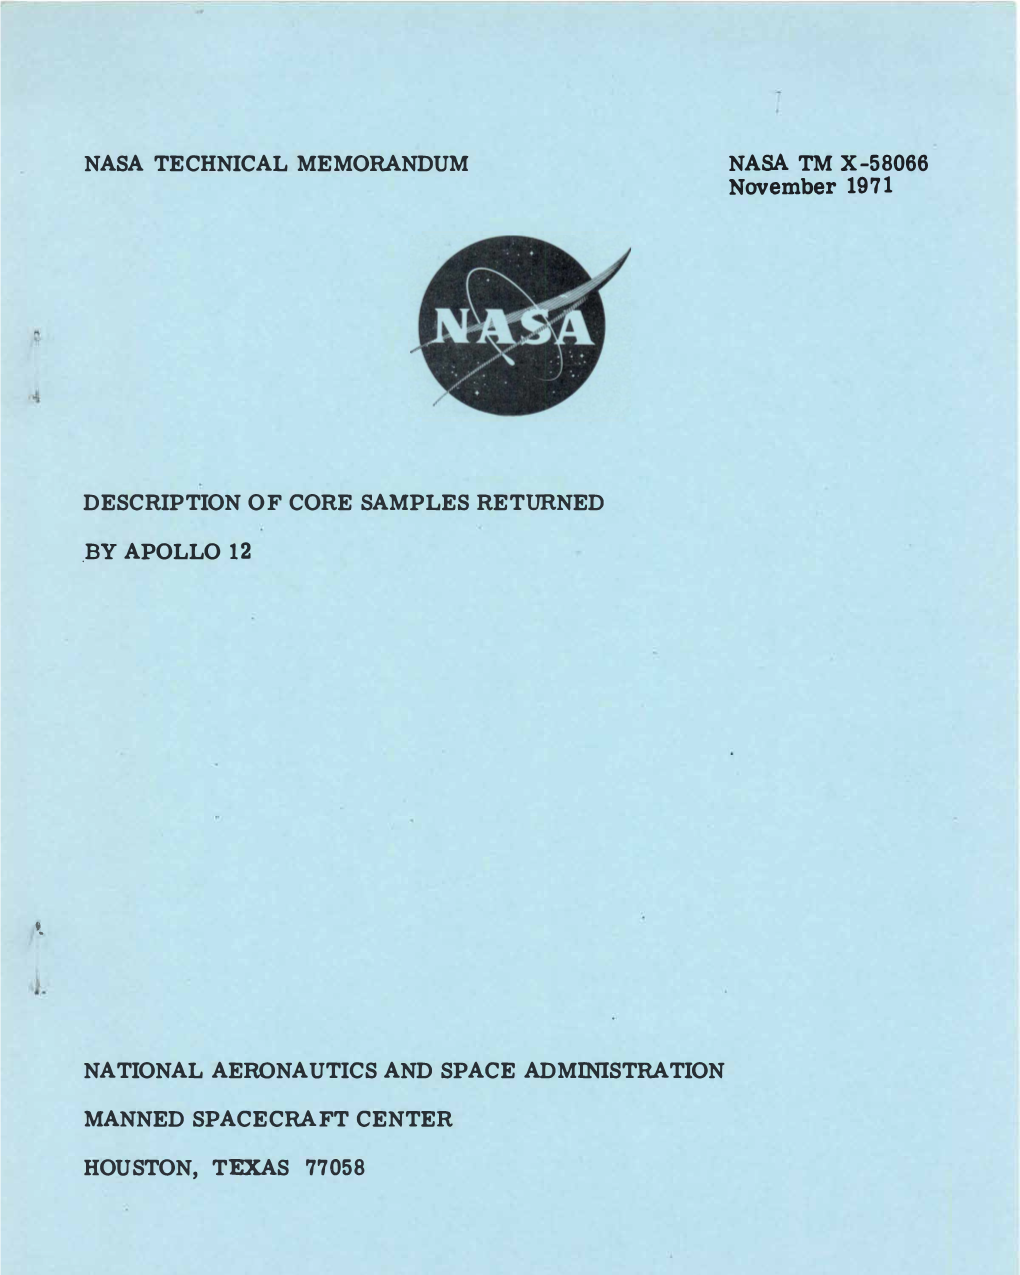 Description of Core Samples Returned by Apollo 12